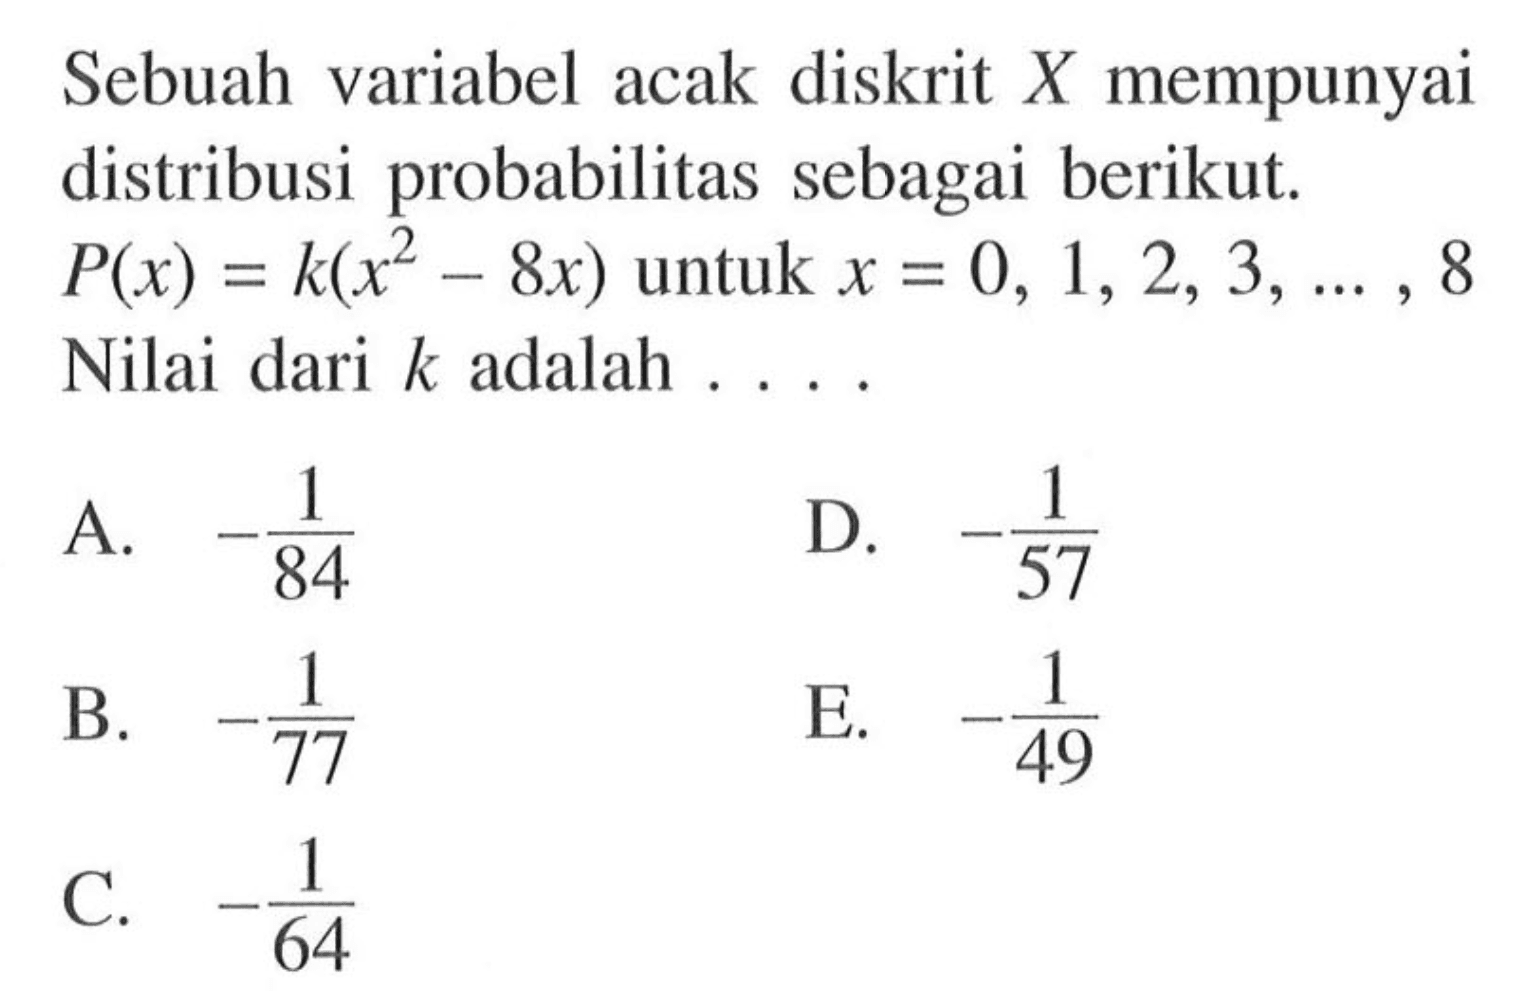 Sebuah variabel acak diskrit X mempunyai distribusi probabilitas sebagai berikut. P(x)=k(x^2-8x) untuk x=0,1,2,3, ...., 8 Nilai dari k adalah .... 